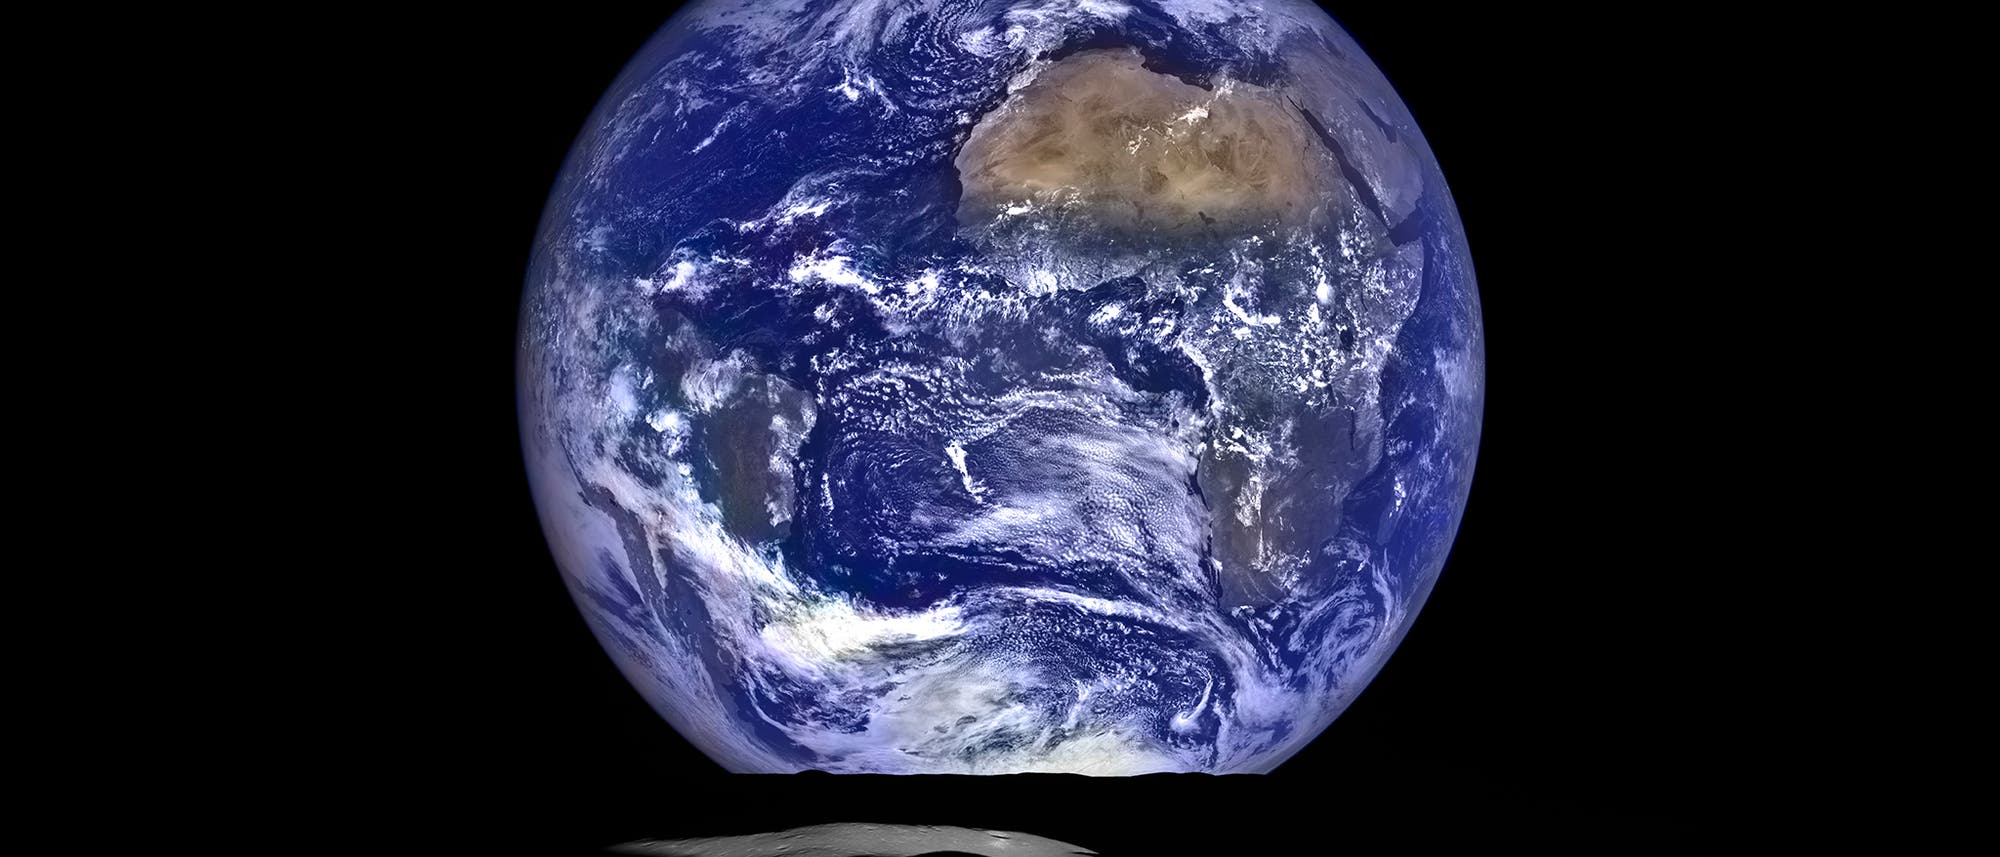 Erde vom Mondkrater Compton aus gesehen. LRO-Aufnahme vom 12. Okt. 2015